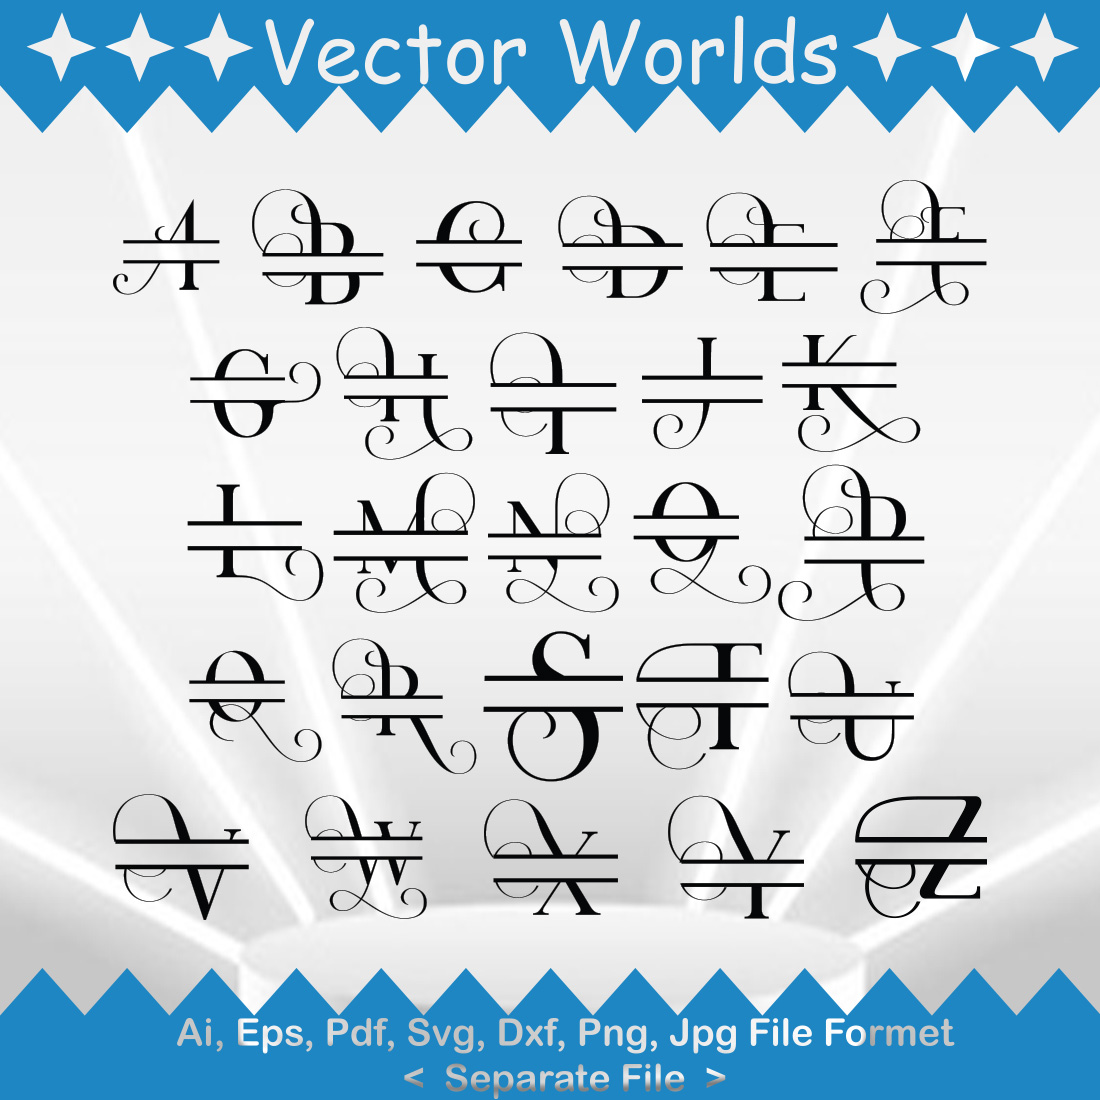 Fancy Letter SVG Vector Design cover image.